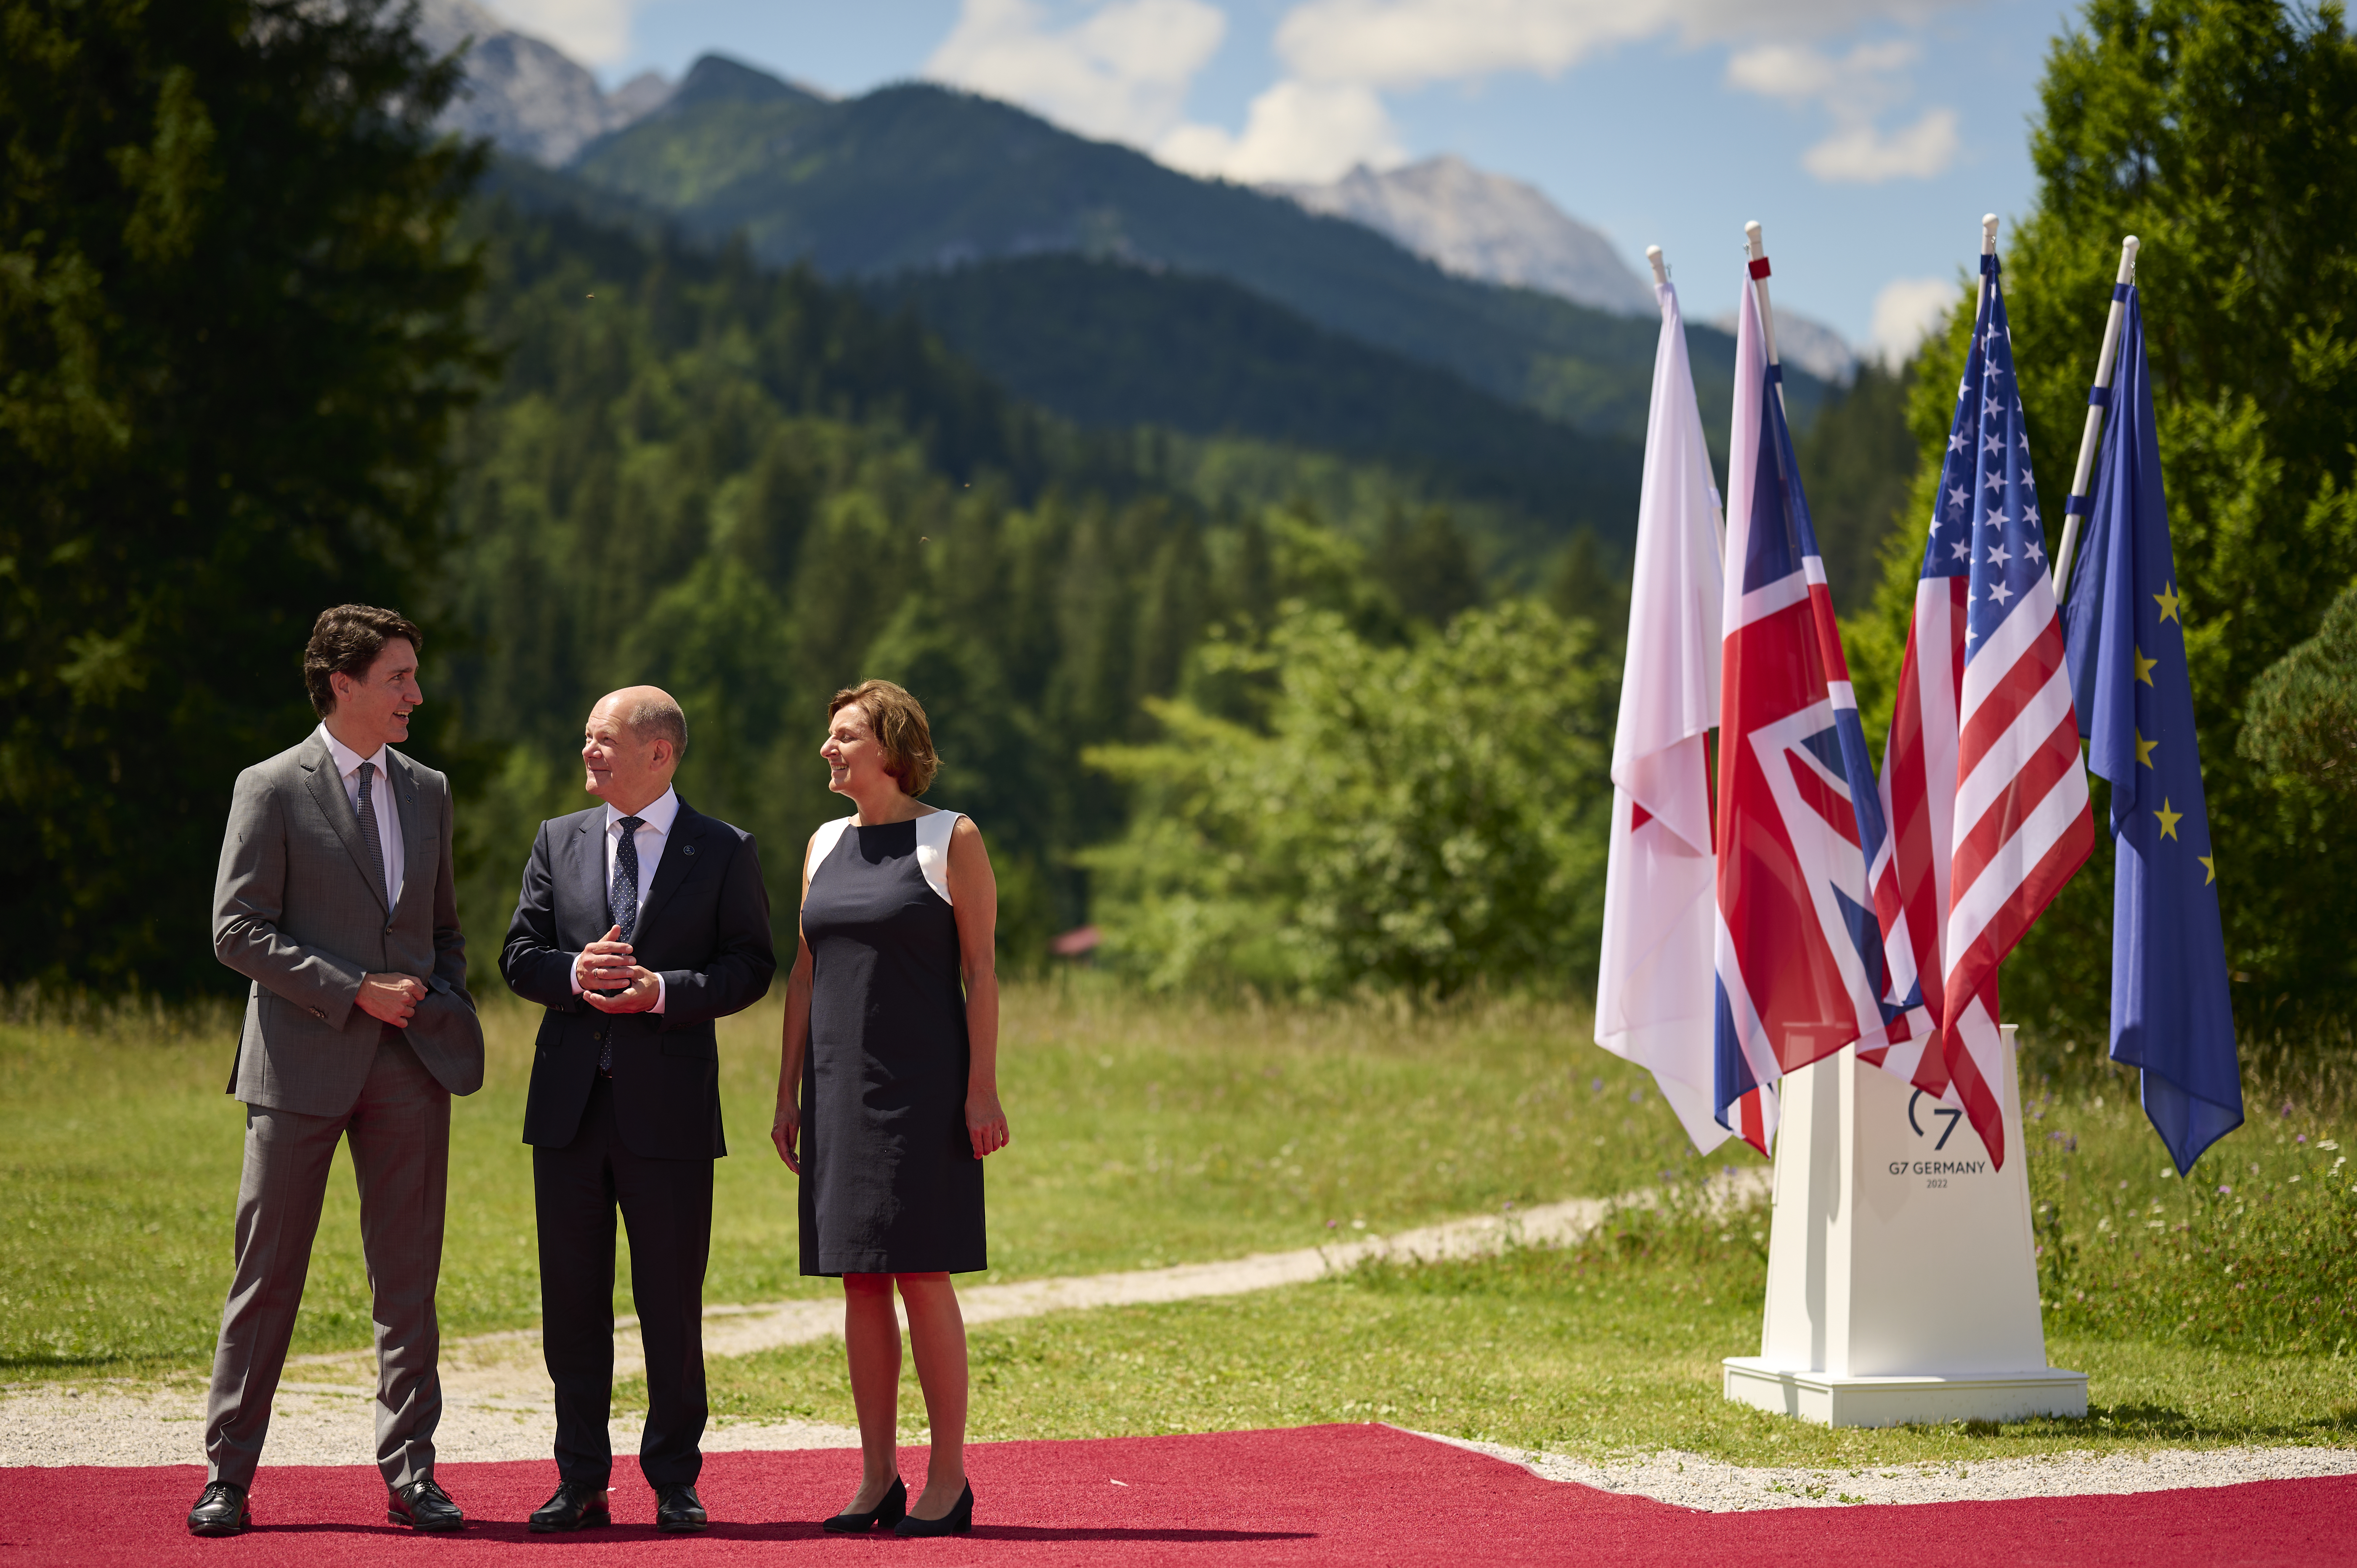 Bundeskanzler Olaf Scholz und seine Frau Britta Ernst begrüßen Justin Trudeau (Premierminister Kanada) zum G7-Gipfel auf Schloss Elmau.